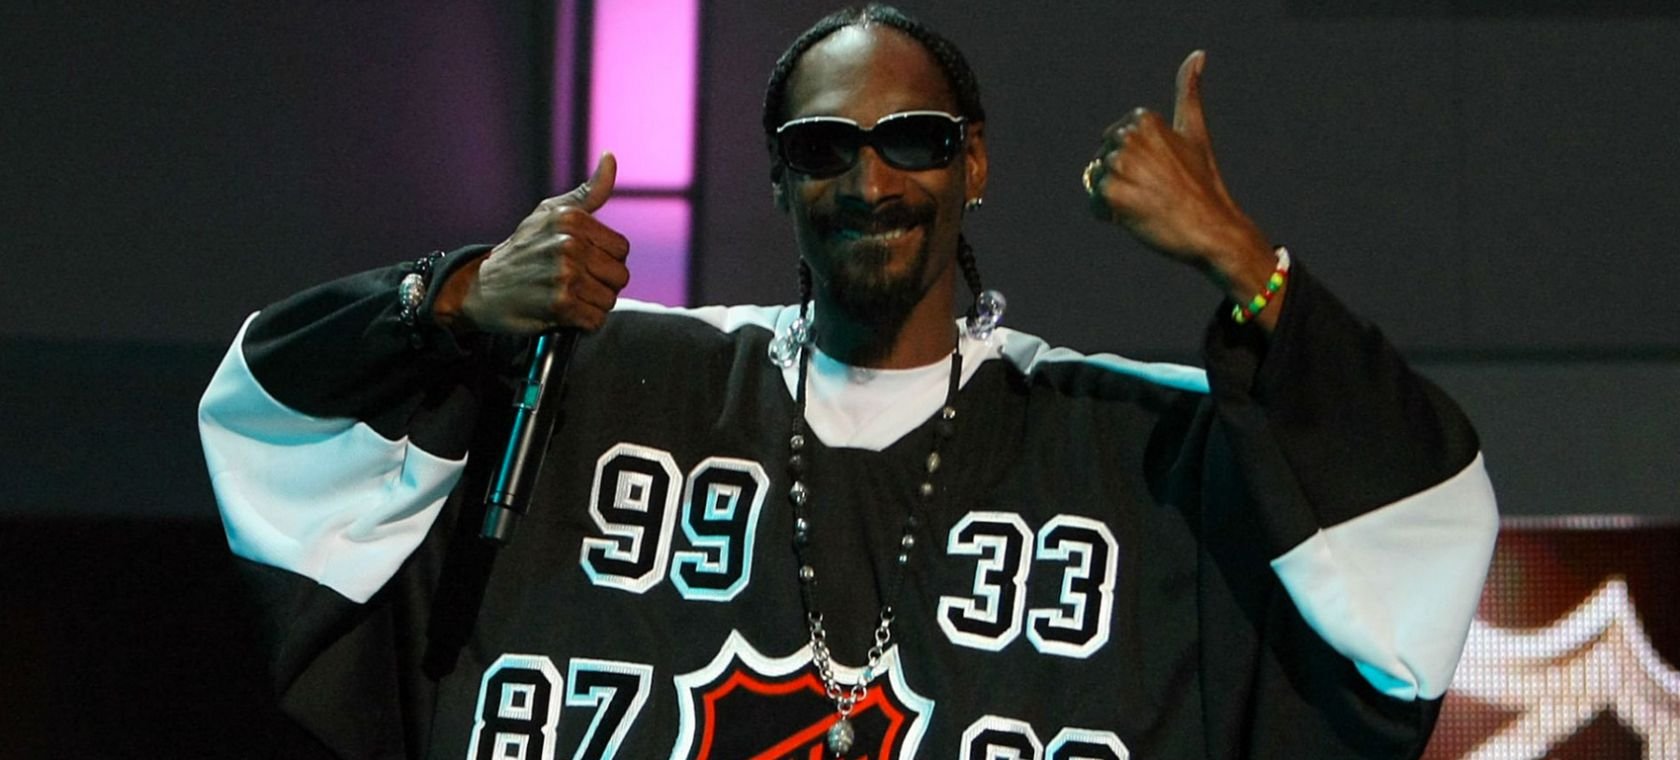 Snoop Dogg contrató a una persona que se dedica exclusivamente a armarle porros